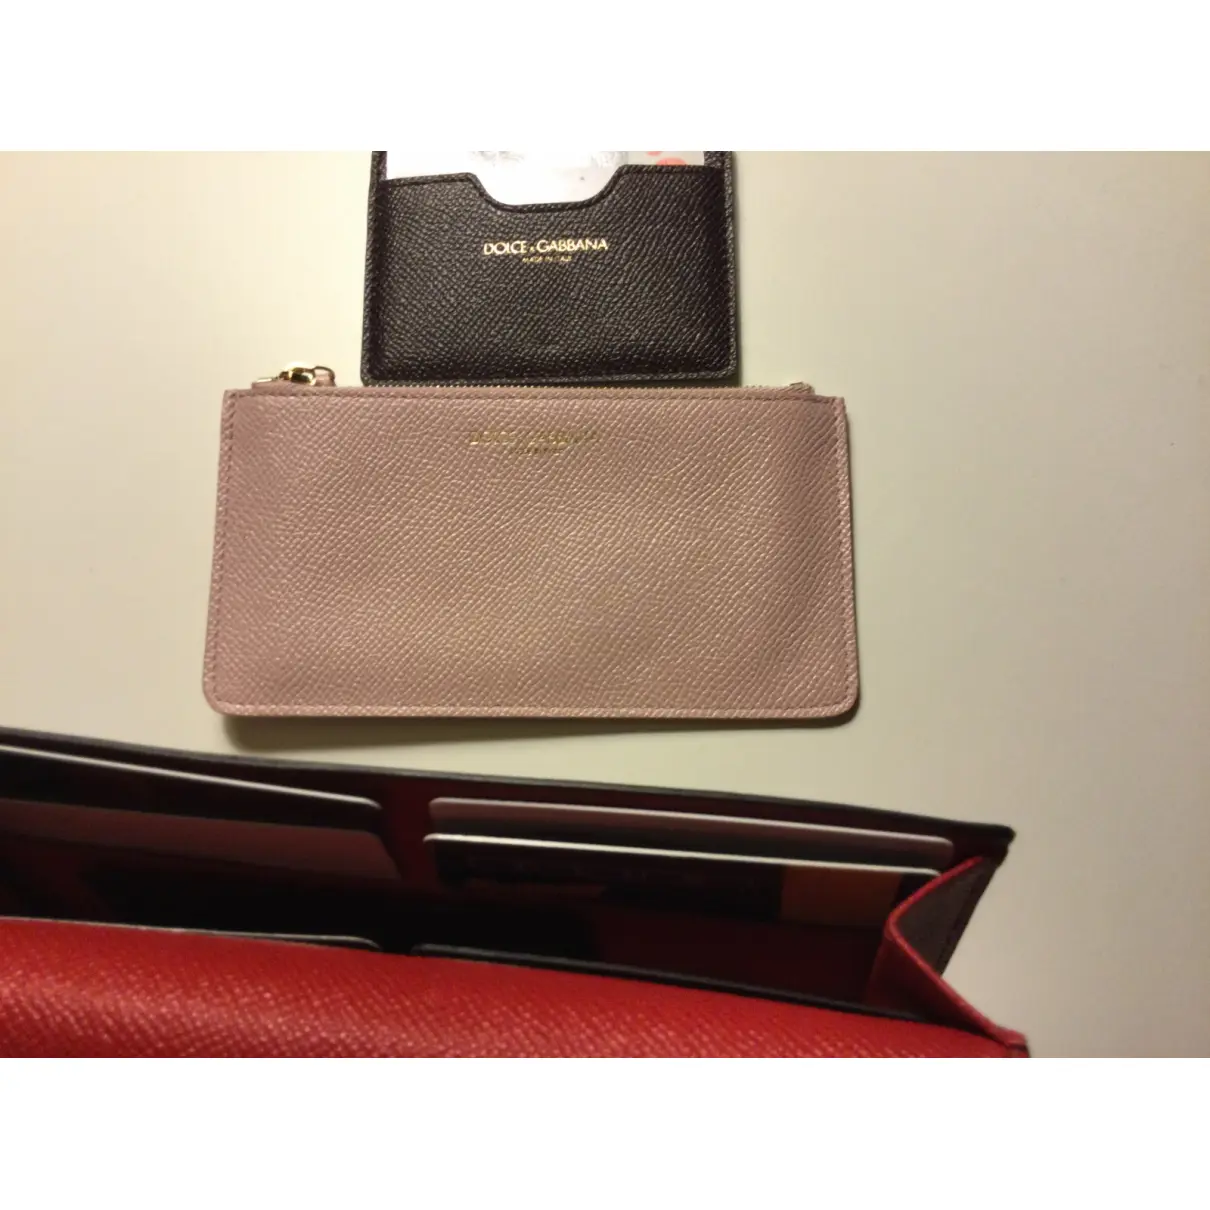 Leather purse Dolce & Gabbana